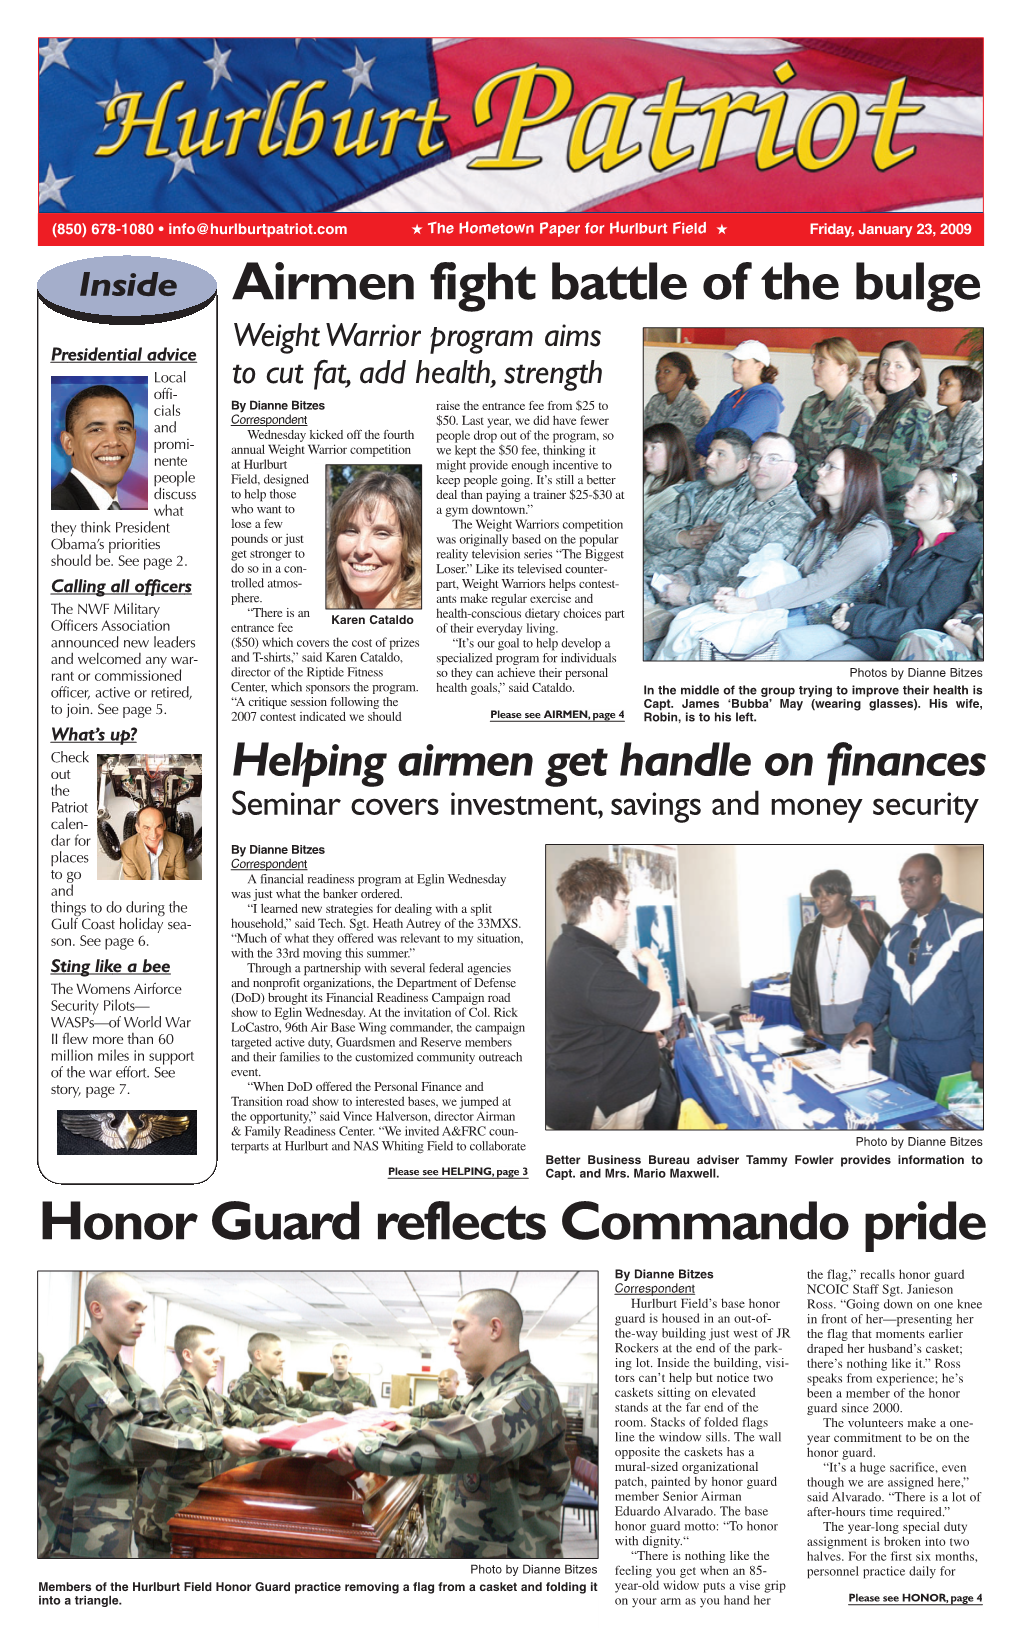 Honor Guard Reflects Commando Pride